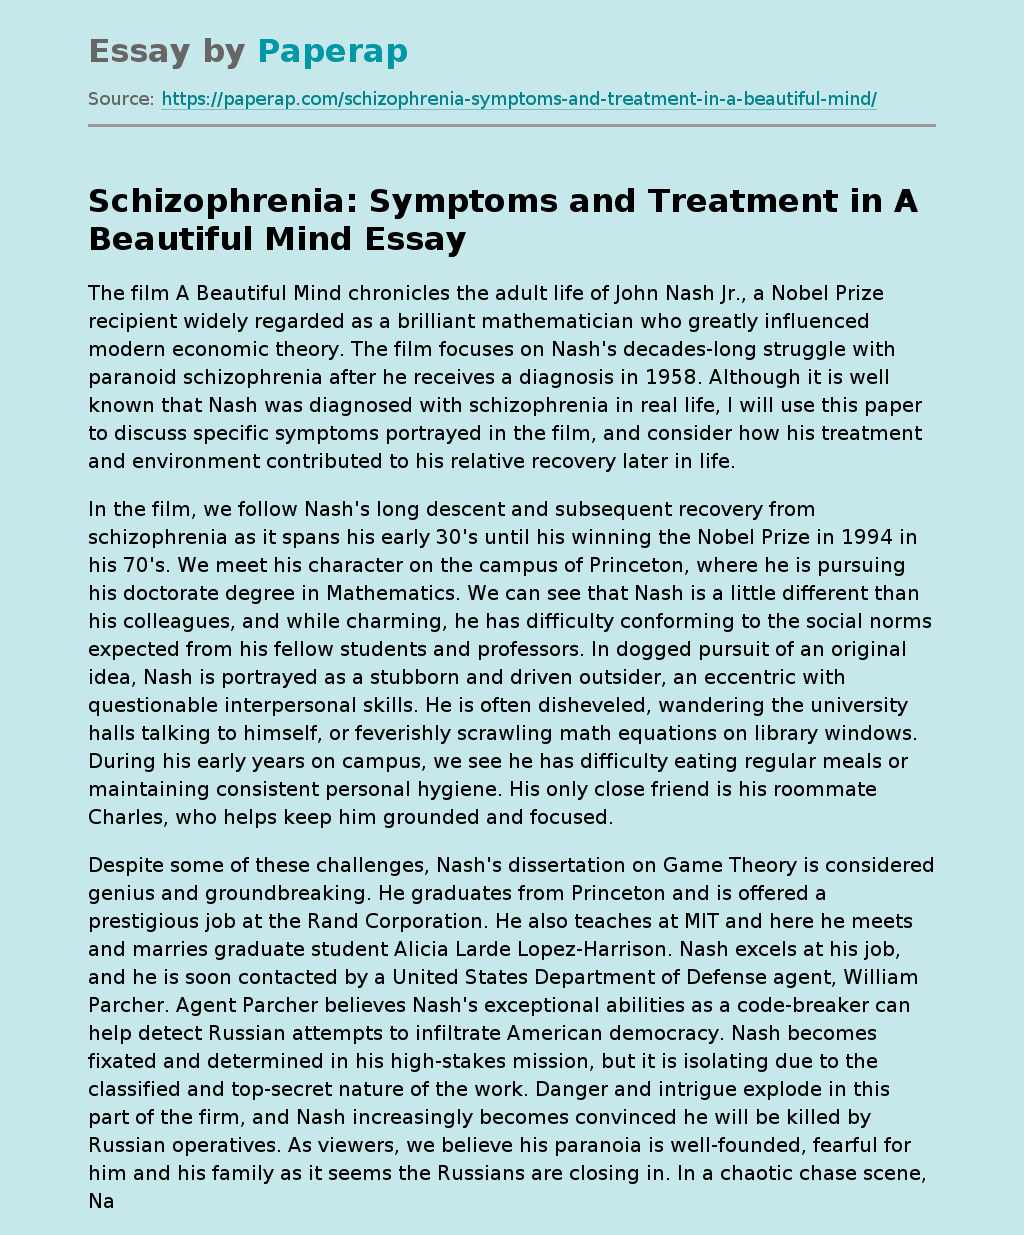 Schizophrenia: Symptoms and Treatment in A Beautiful Mind